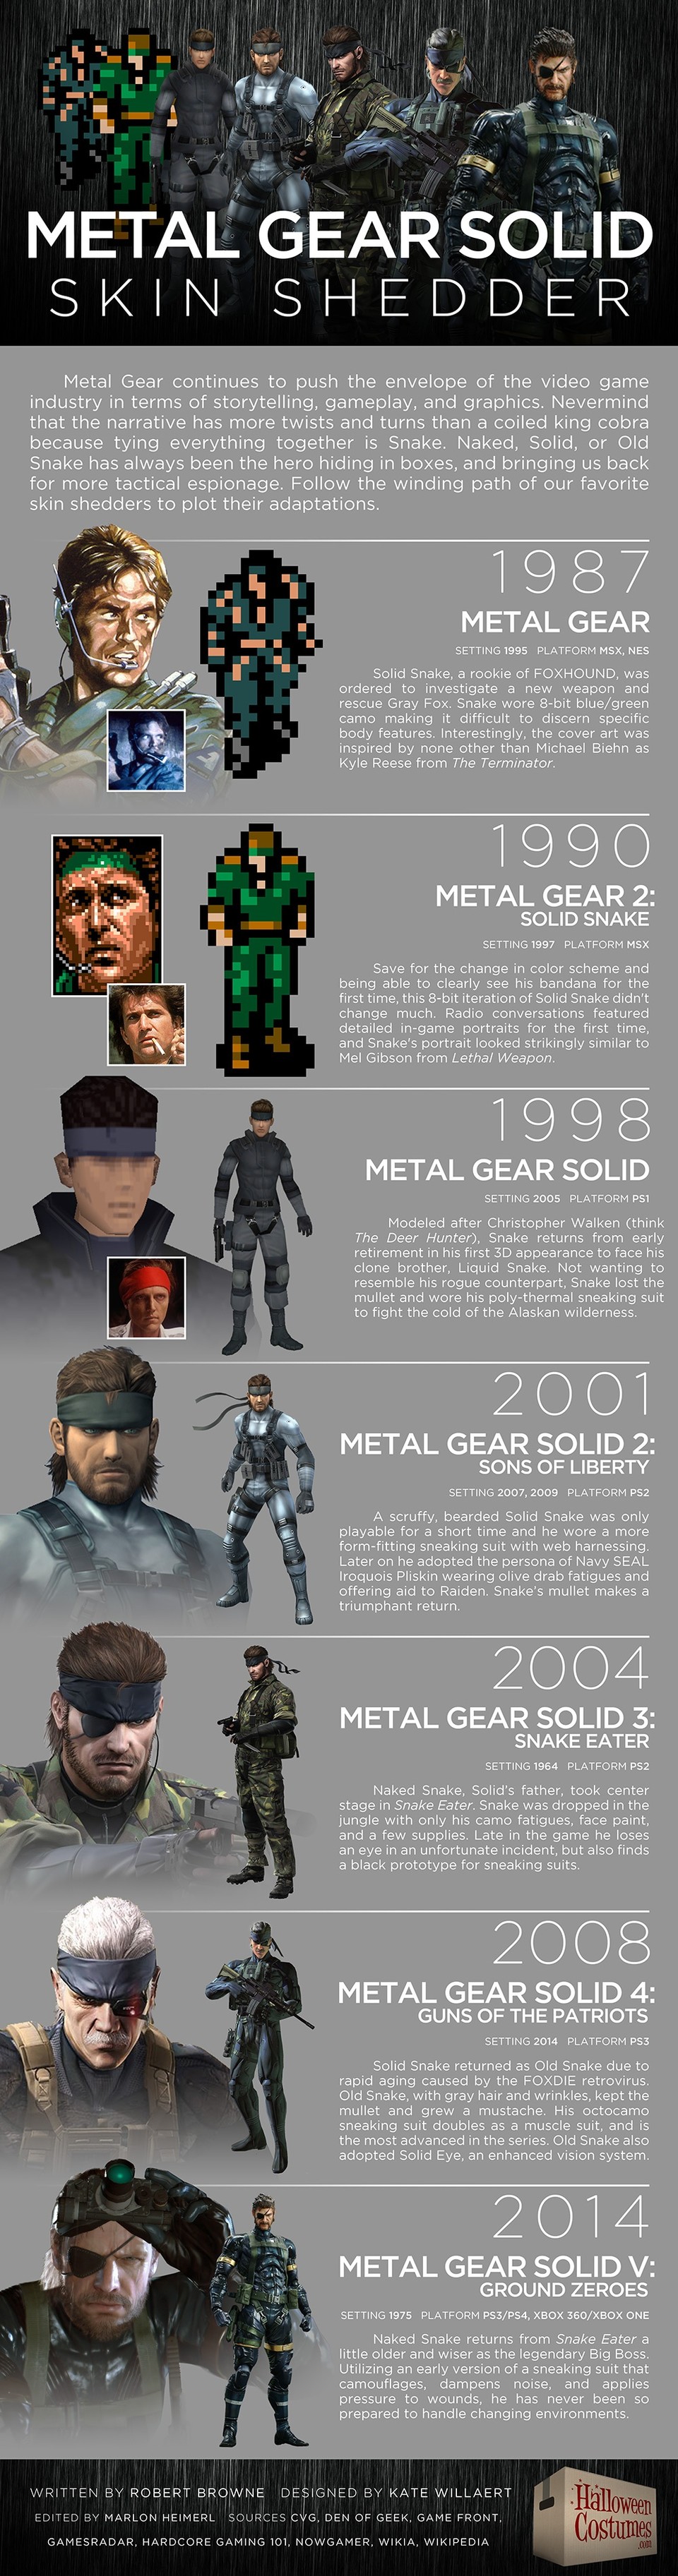 Eine von helloweencostumes.com erstellte Infografik zeigt die visuelle Evolution der Spiele-Reihe Metal Gear Solid und ihrer Protagonisten.